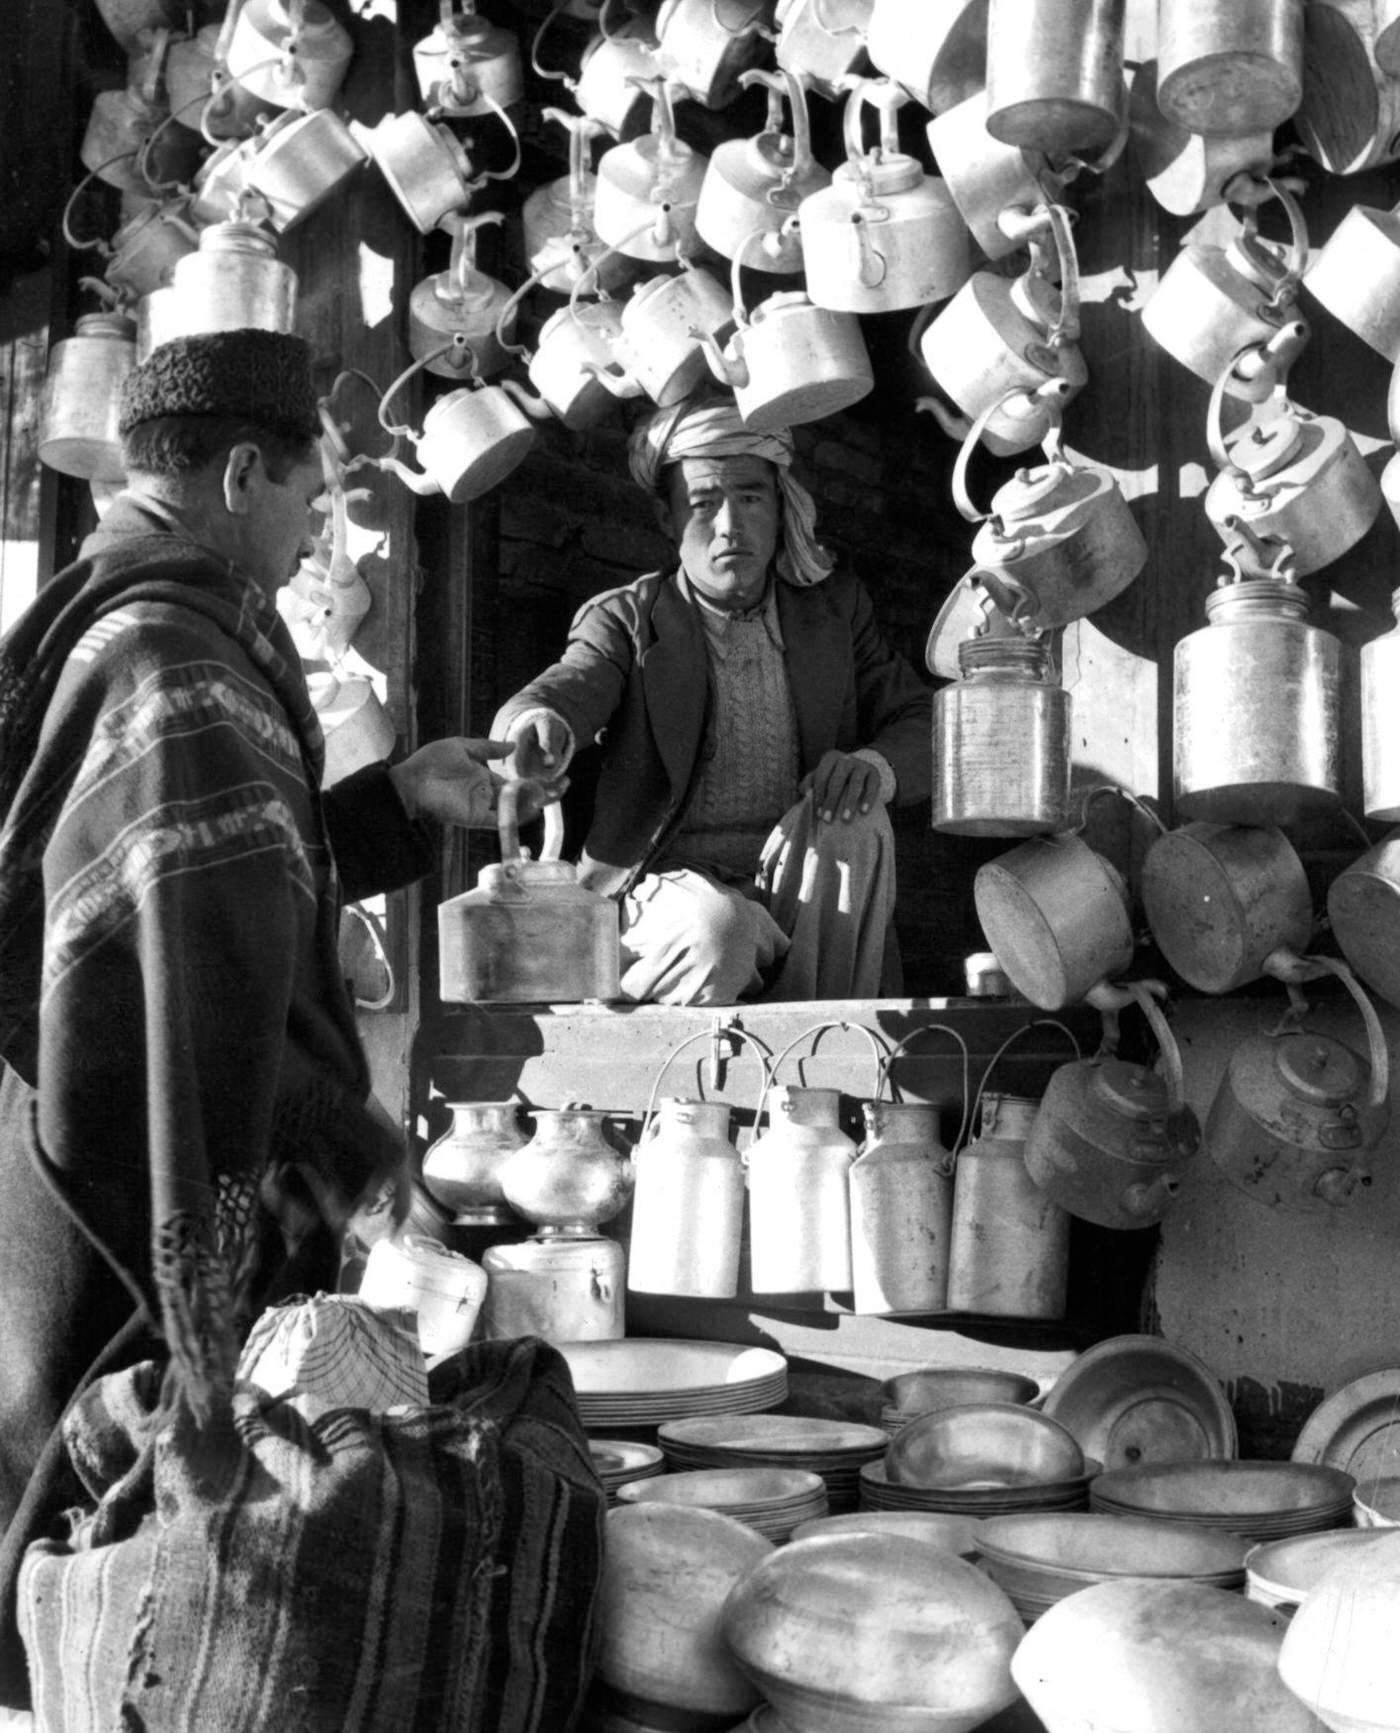 Outdoor market in Afghanistan, 1955.